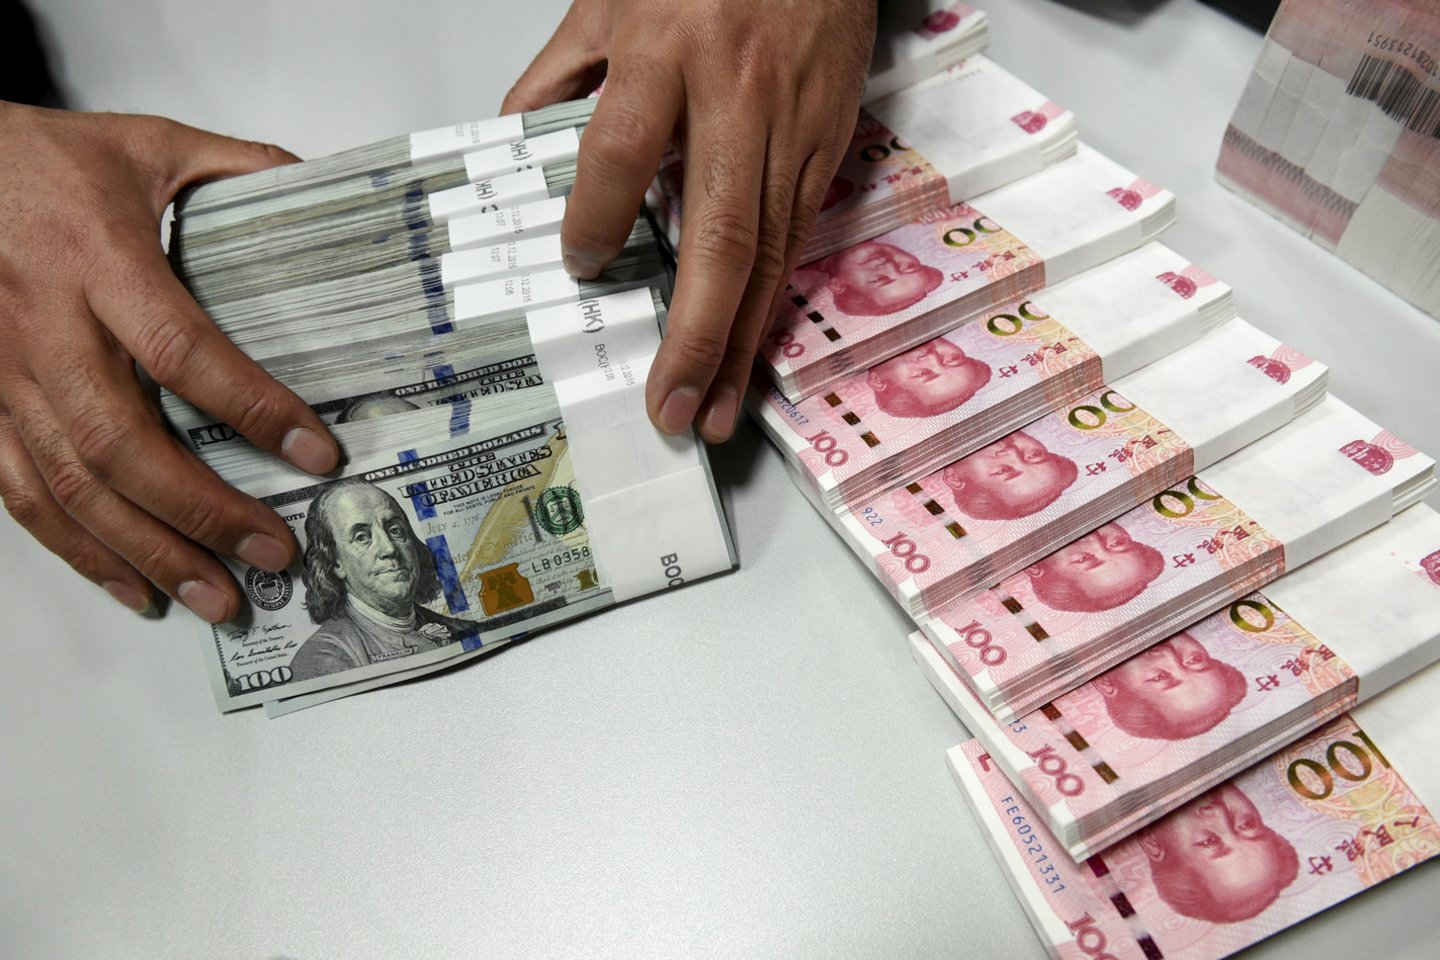 Kol Kinija gali užtikrinti, kad juanio silpnumas yra tinkamai kontroliuojamas, galima laukti tolesnio valiutos vertės mažėjimo.<br> Reuters/Scanpix nuotr.